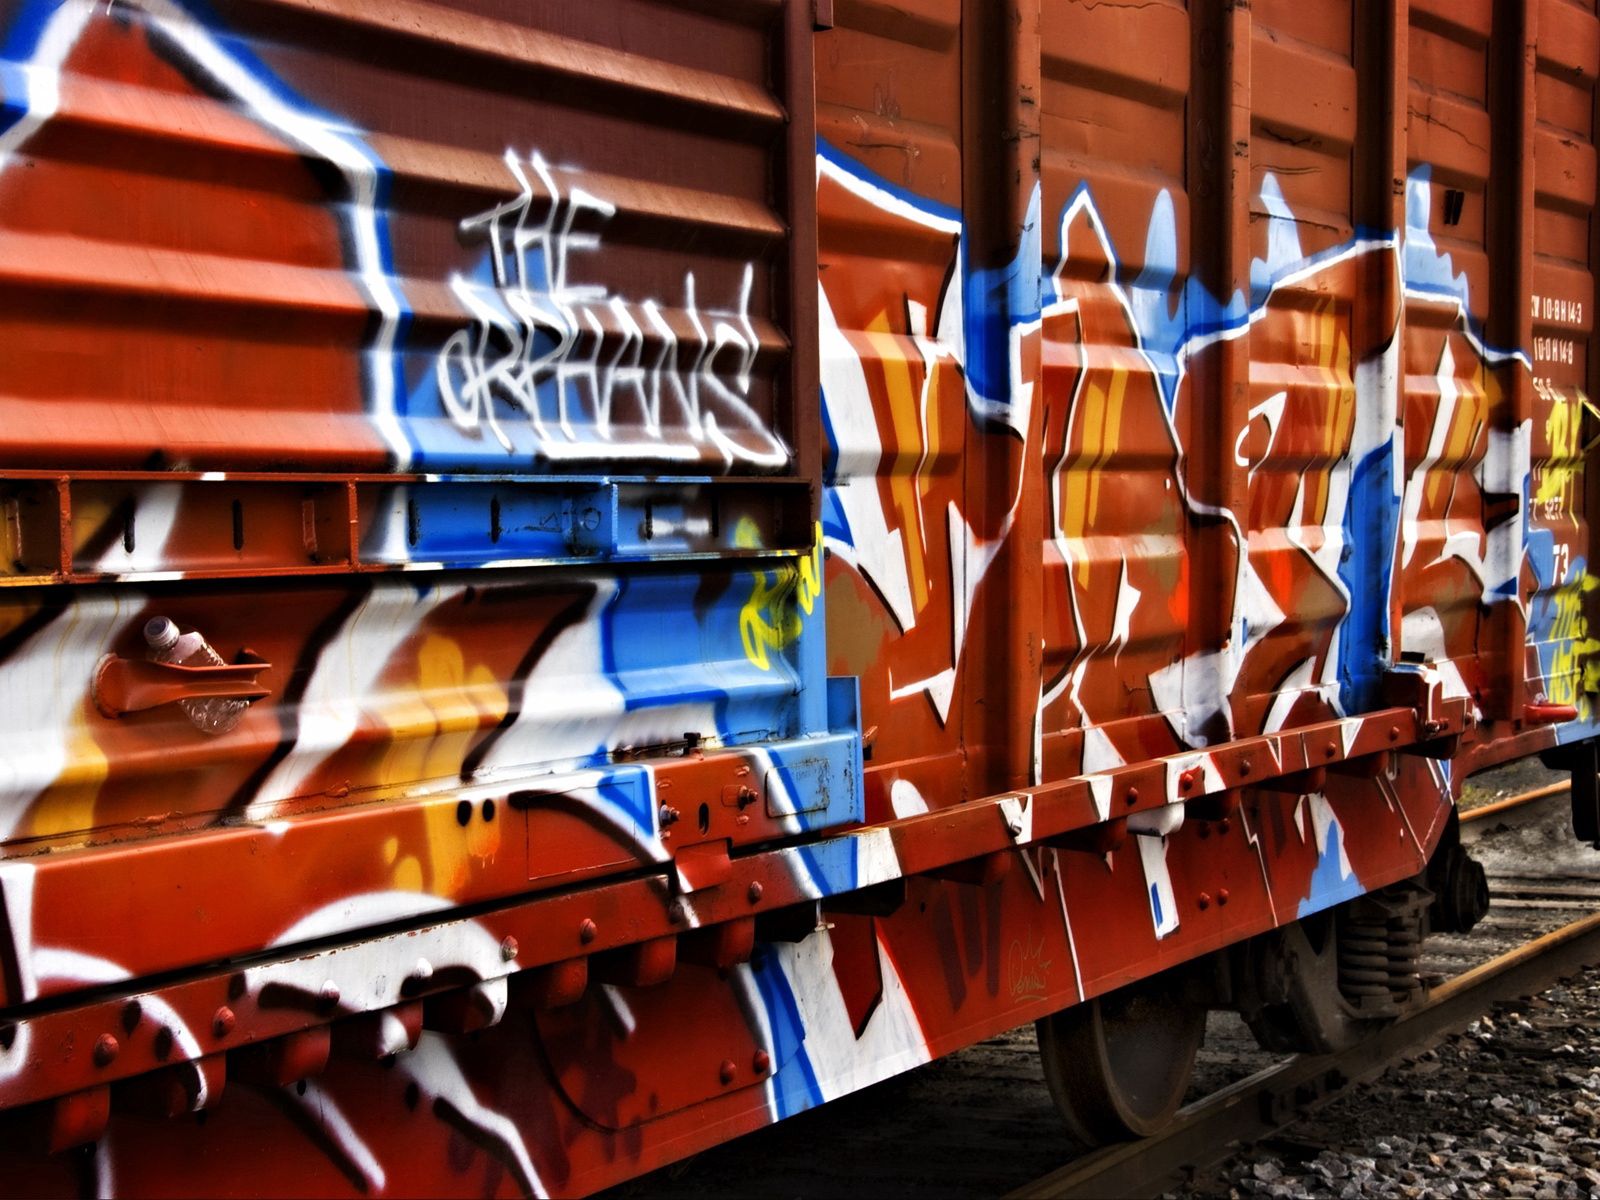 motley, graffiti, miscellaneous, miscellanea, multicolored, car, metal, trailer, railway carriage download HD wallpaper